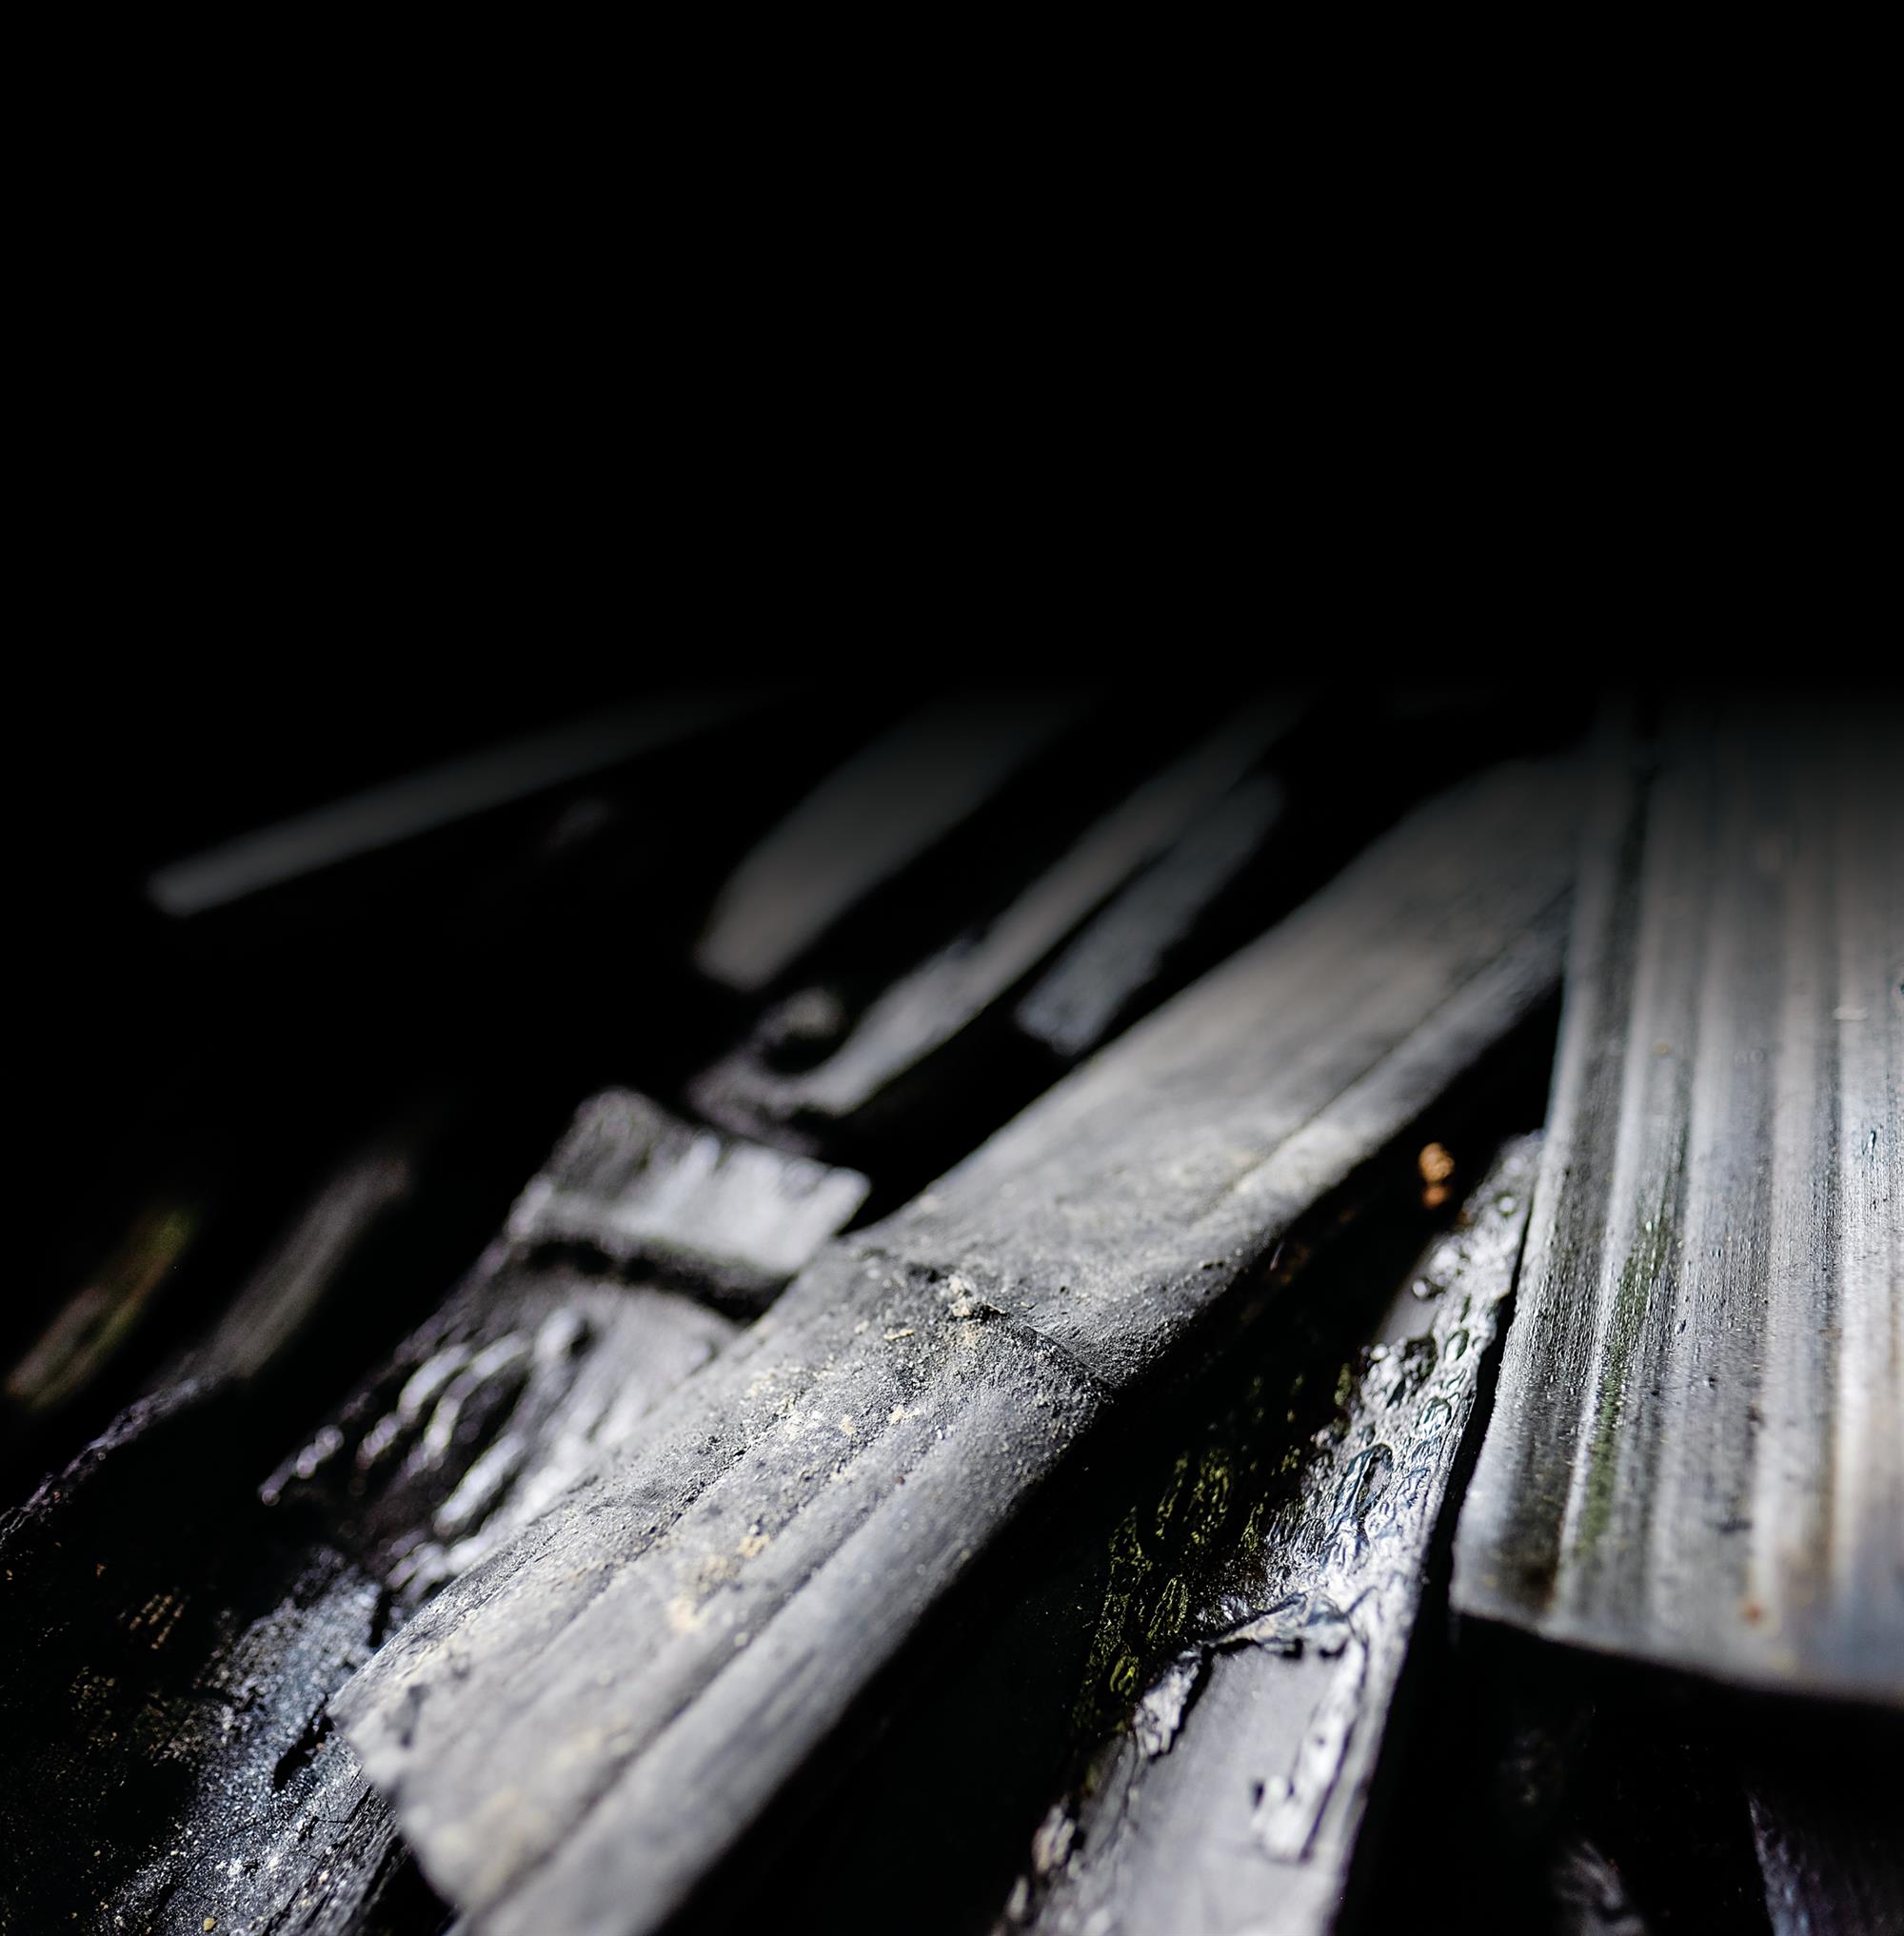 竹子經過高溫淬煉成炭，紋理依稀可見，但多了吸附調節與釋放遠紅外線的功能，成為具有發展潛力的黑鑽石。